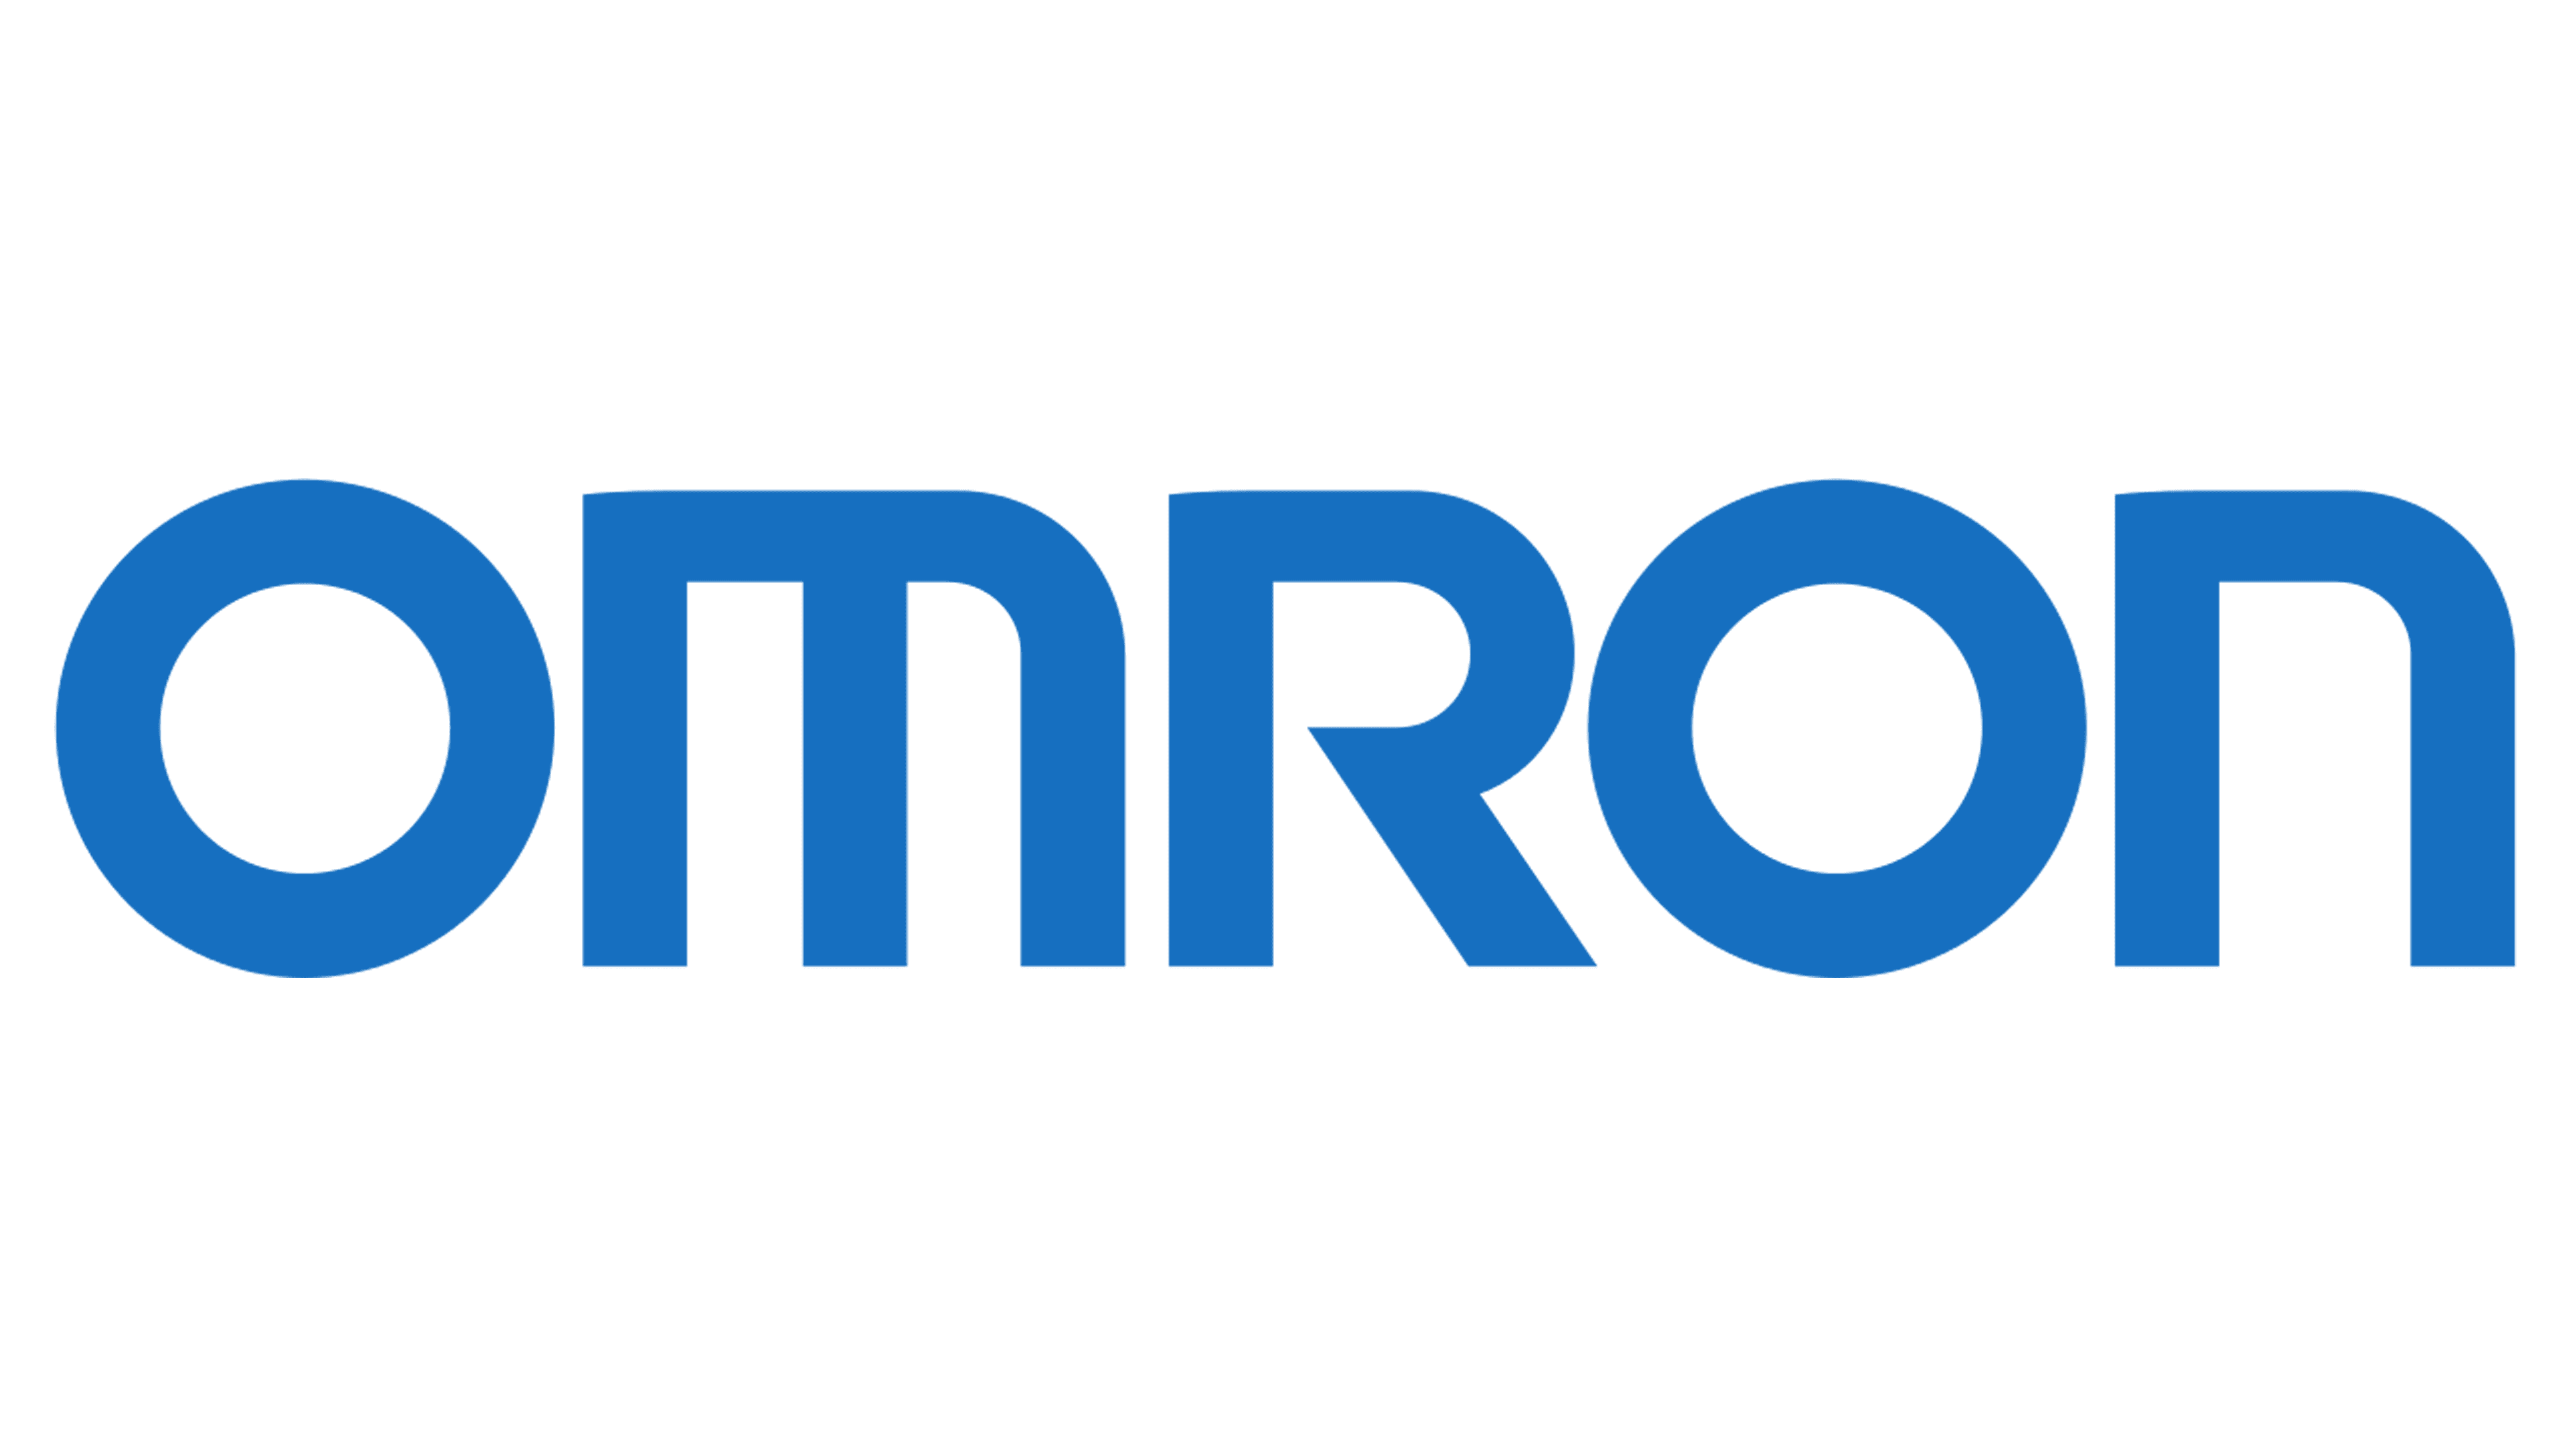 Omron M2 – Tensiómetro Digital de Brazo